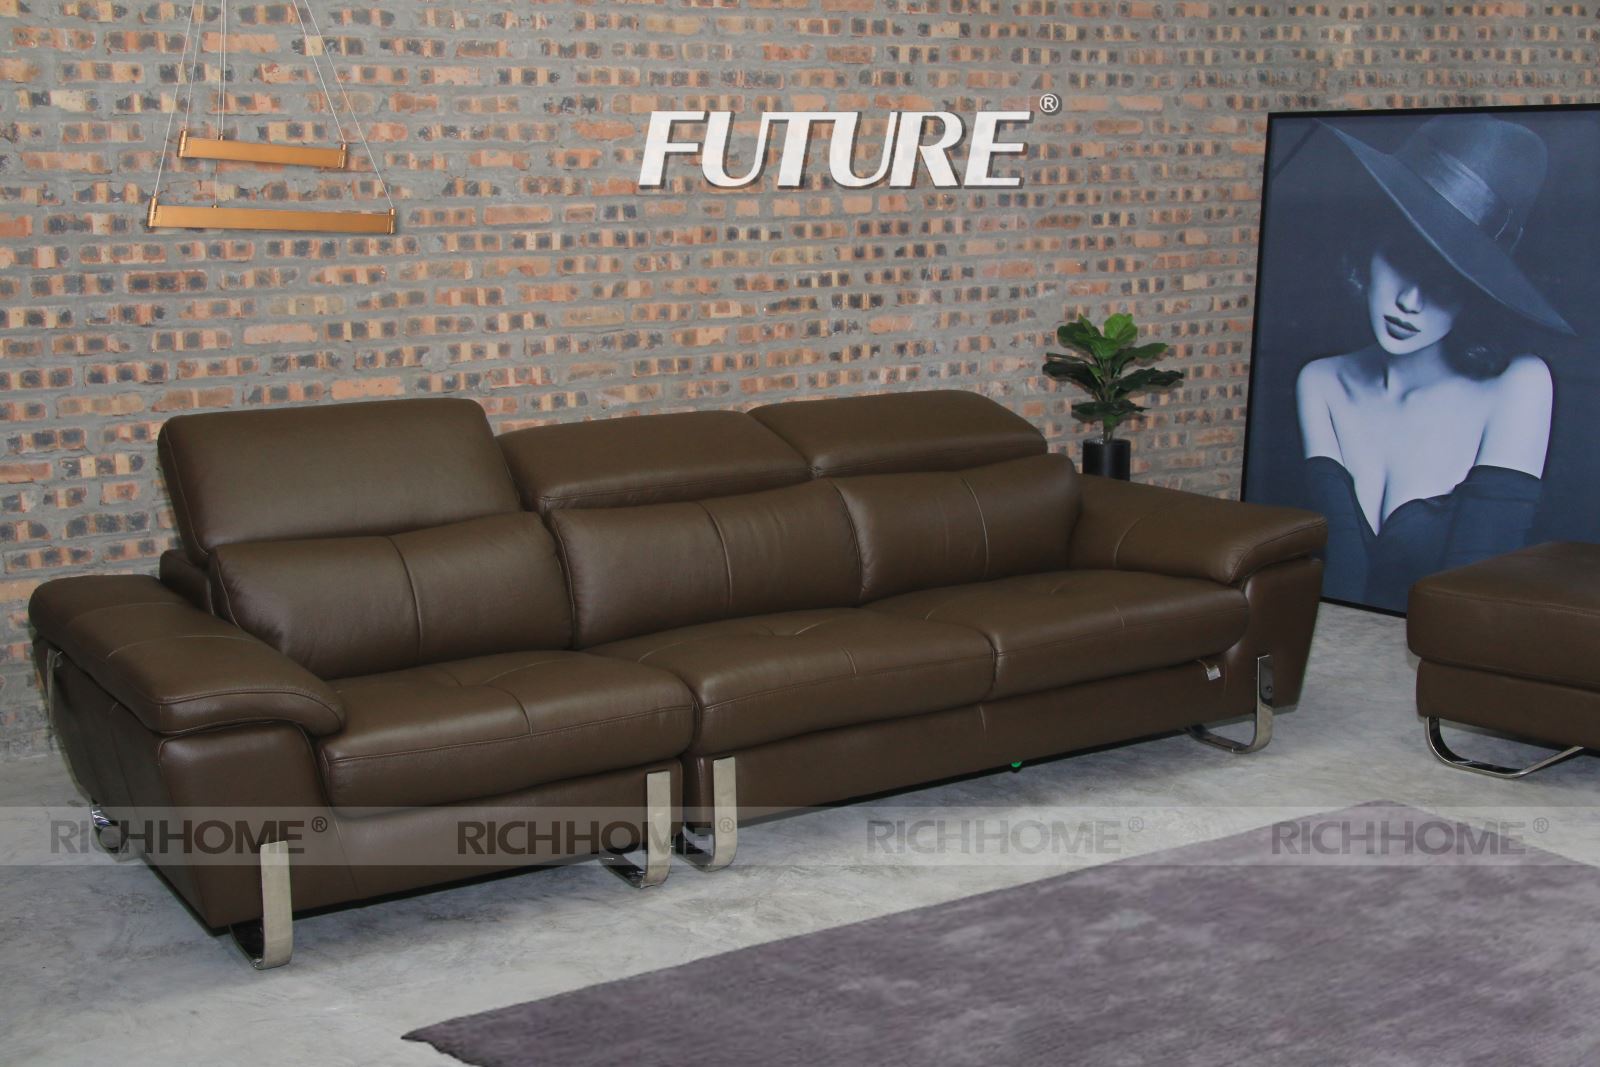 Mẫu sofa văng da bò đẹp lạ cho mọi kích thước phòng khách - Ảnh 4